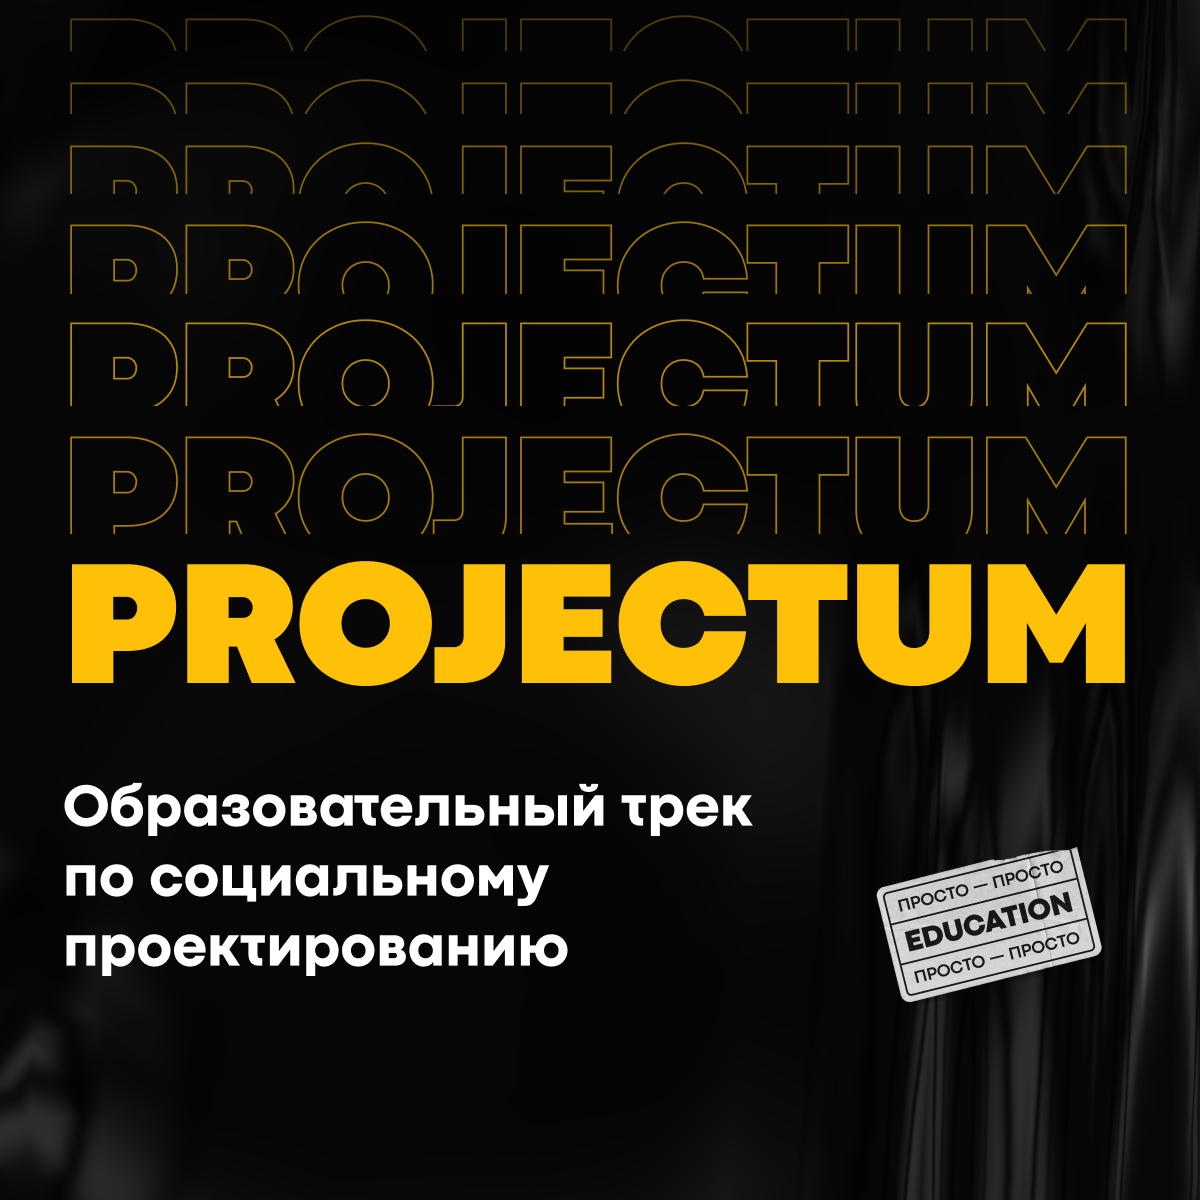 Подготовка грантовой заявки: часть 2. Календарный план Образовательный трек по социальному проектированию Projectum.